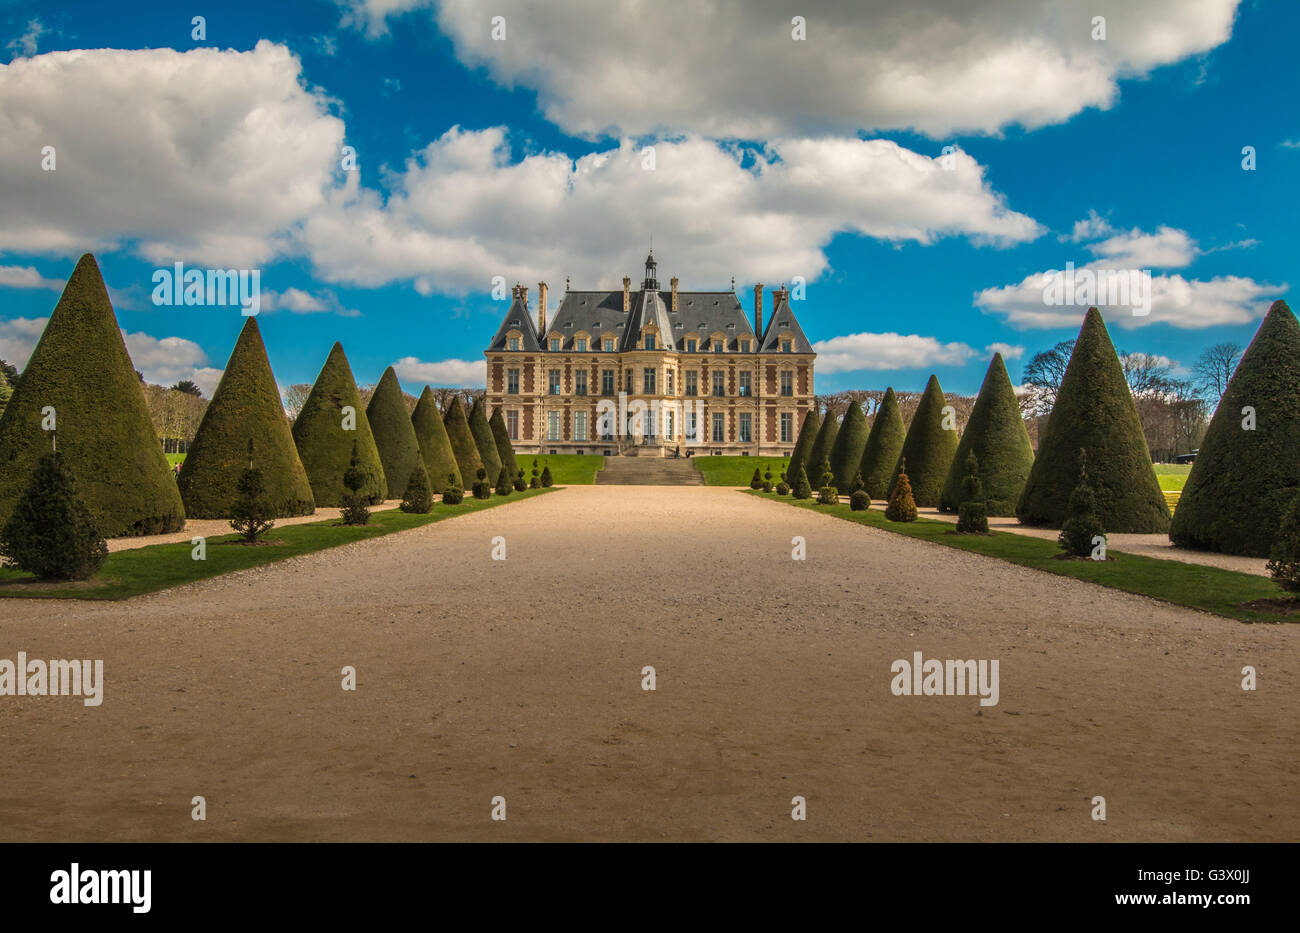 Château de Sceaux in Paris France Stock Photo